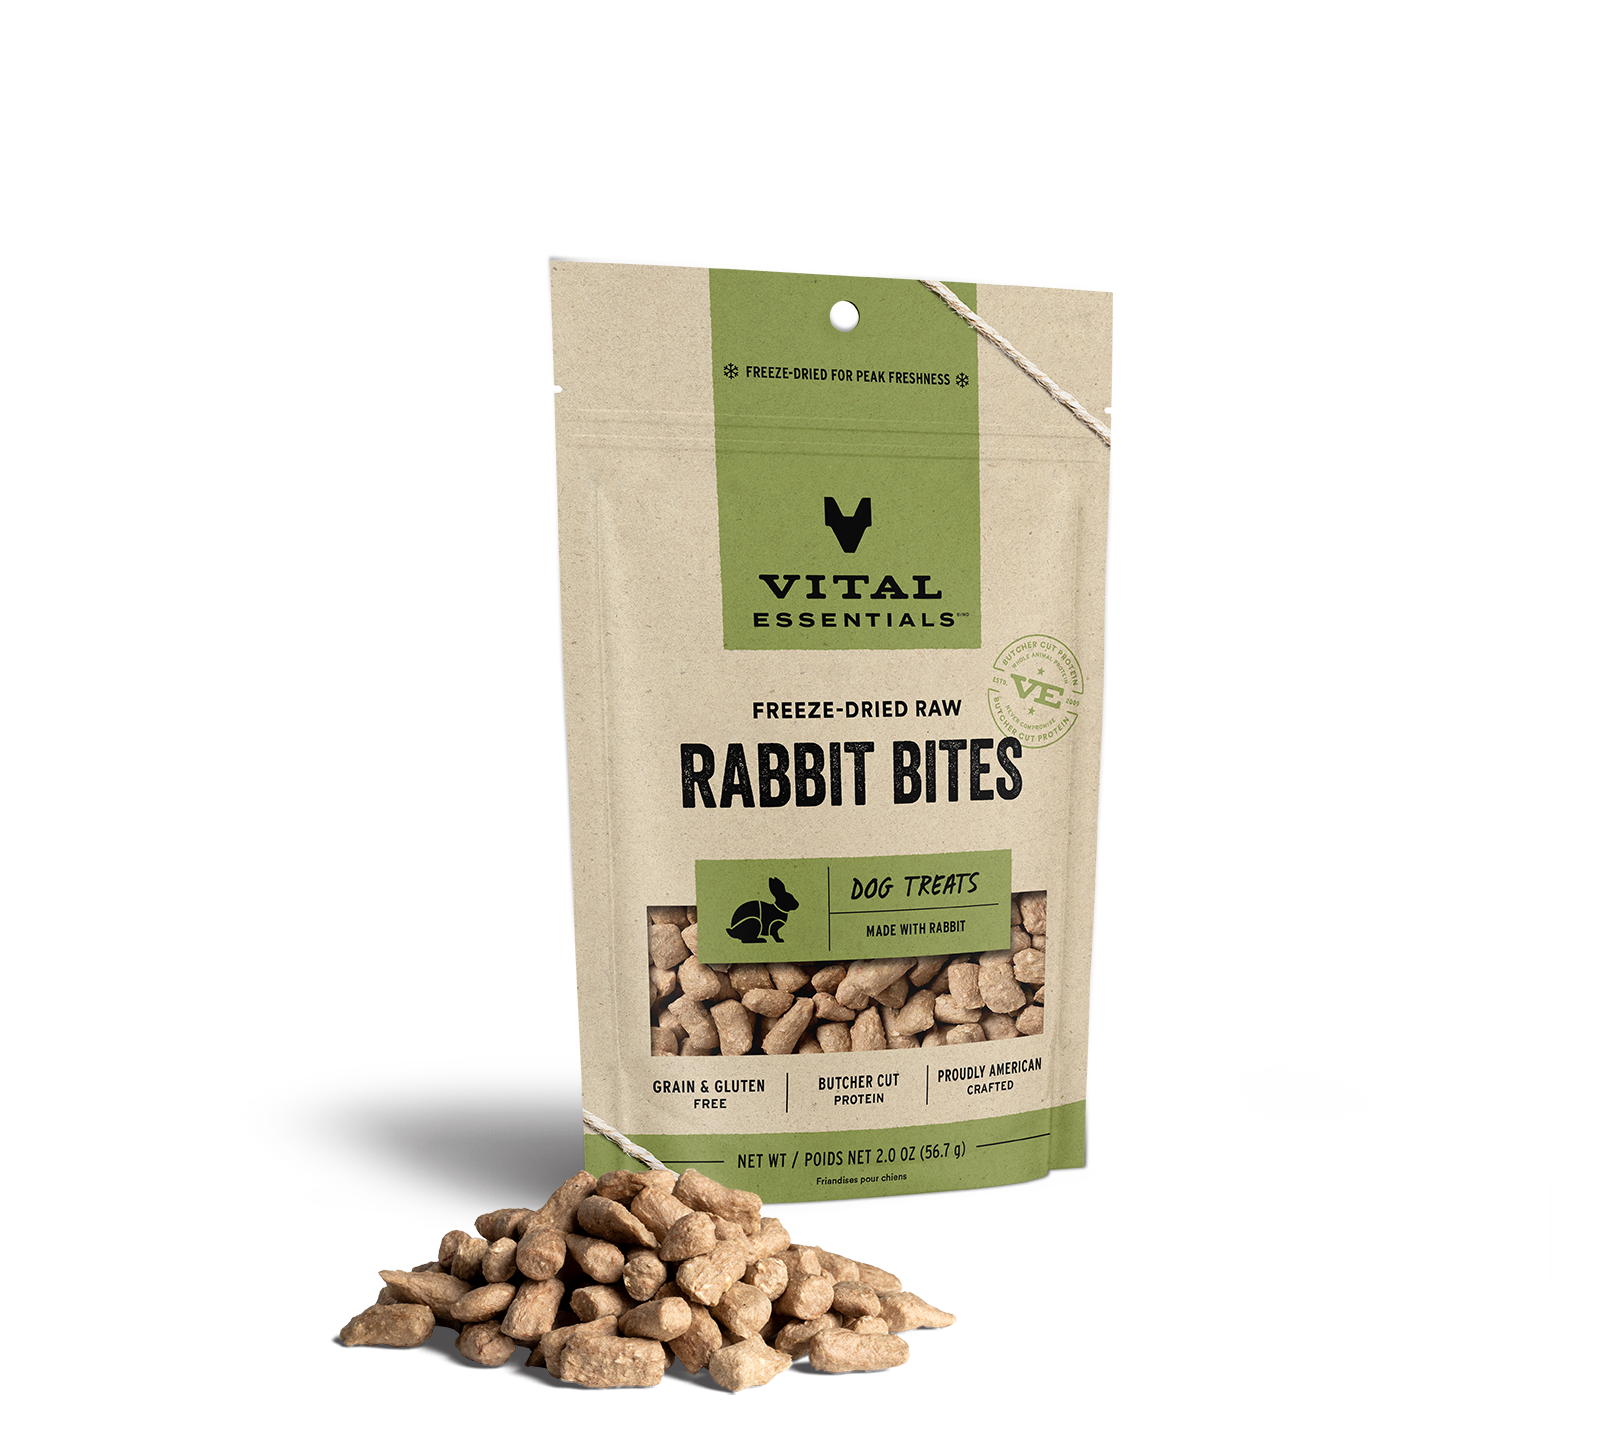 Vital Essentials Freeze-Dried Rabbit Bites Dog Treats, 2 oz - Health/First Aid